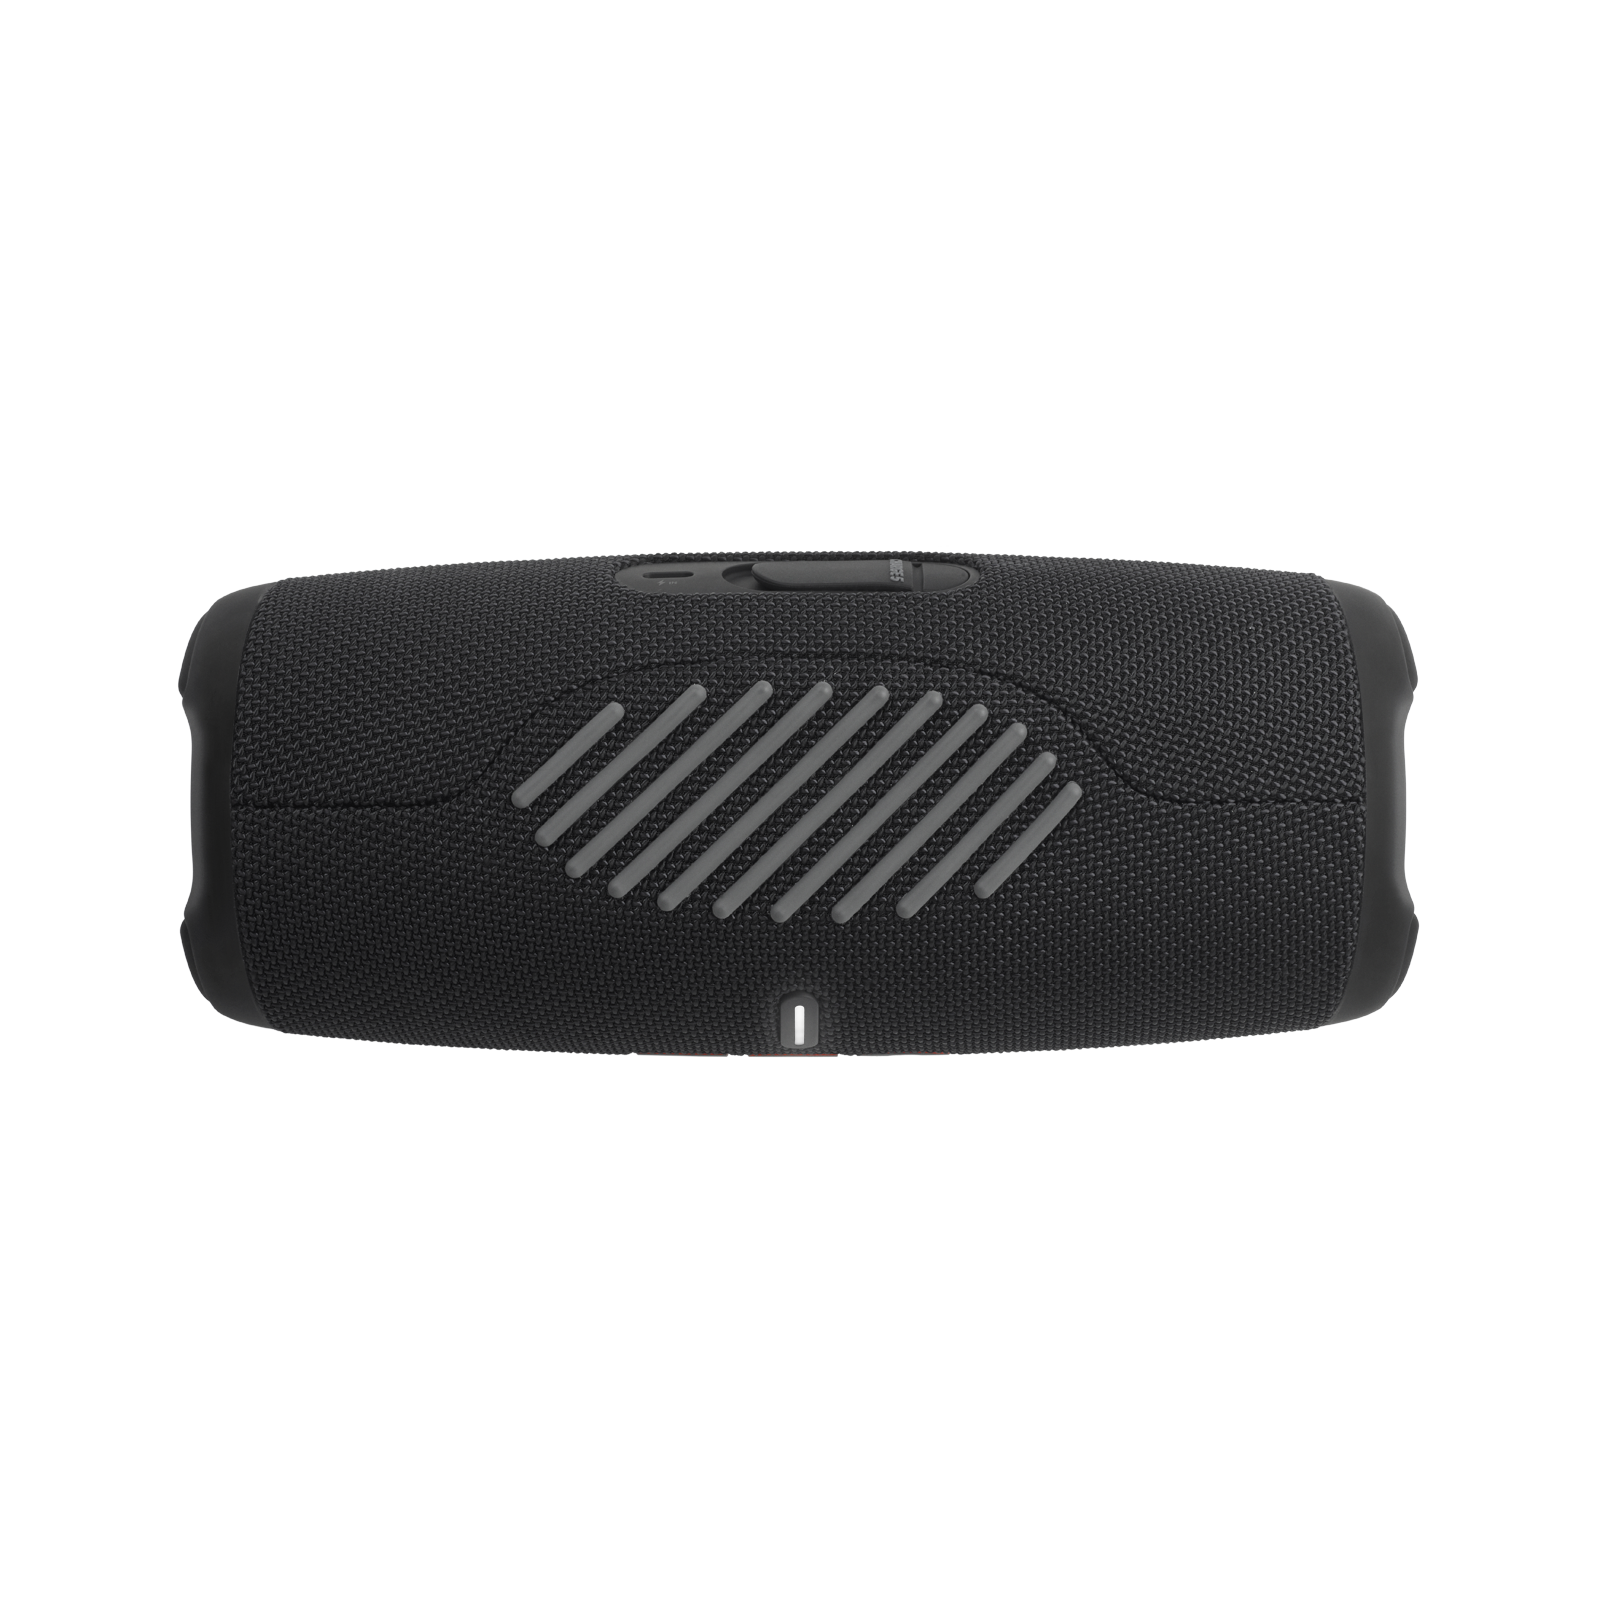 JBL Charge 5 Portable Waterproof Bluetooth Speaker with Powerbank, Black - image 5 of 7